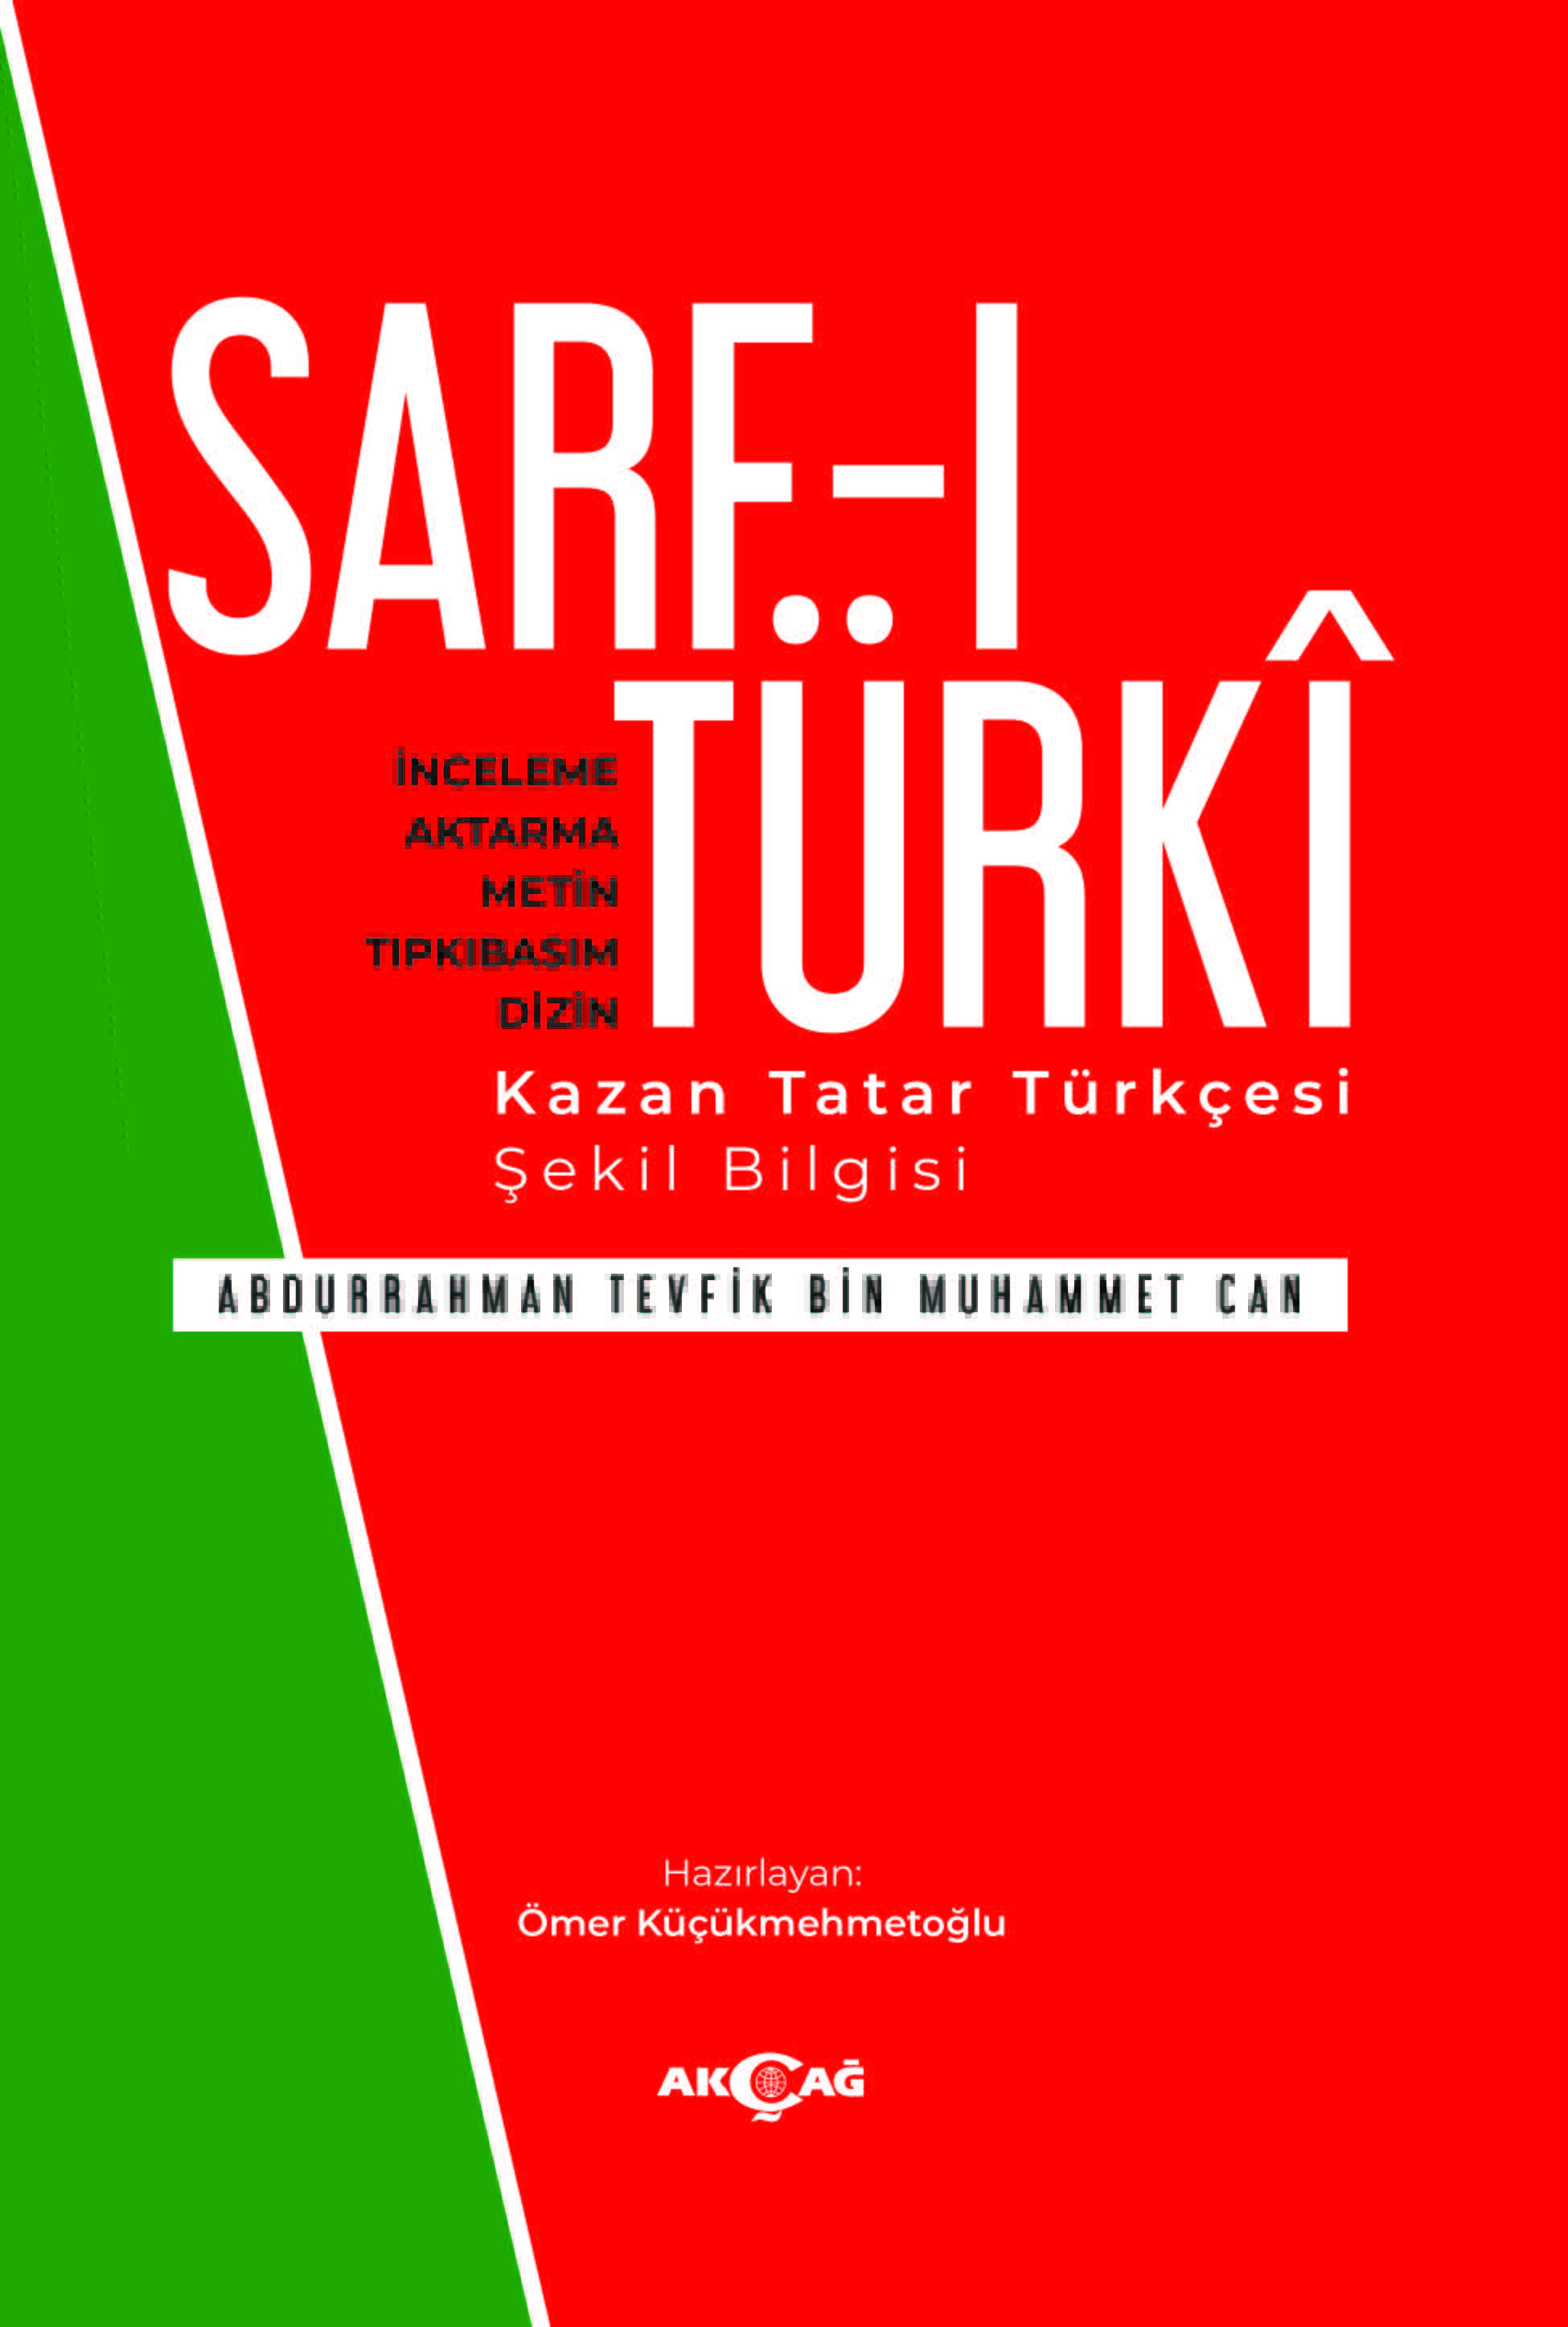 SARF-I TÜRKİ